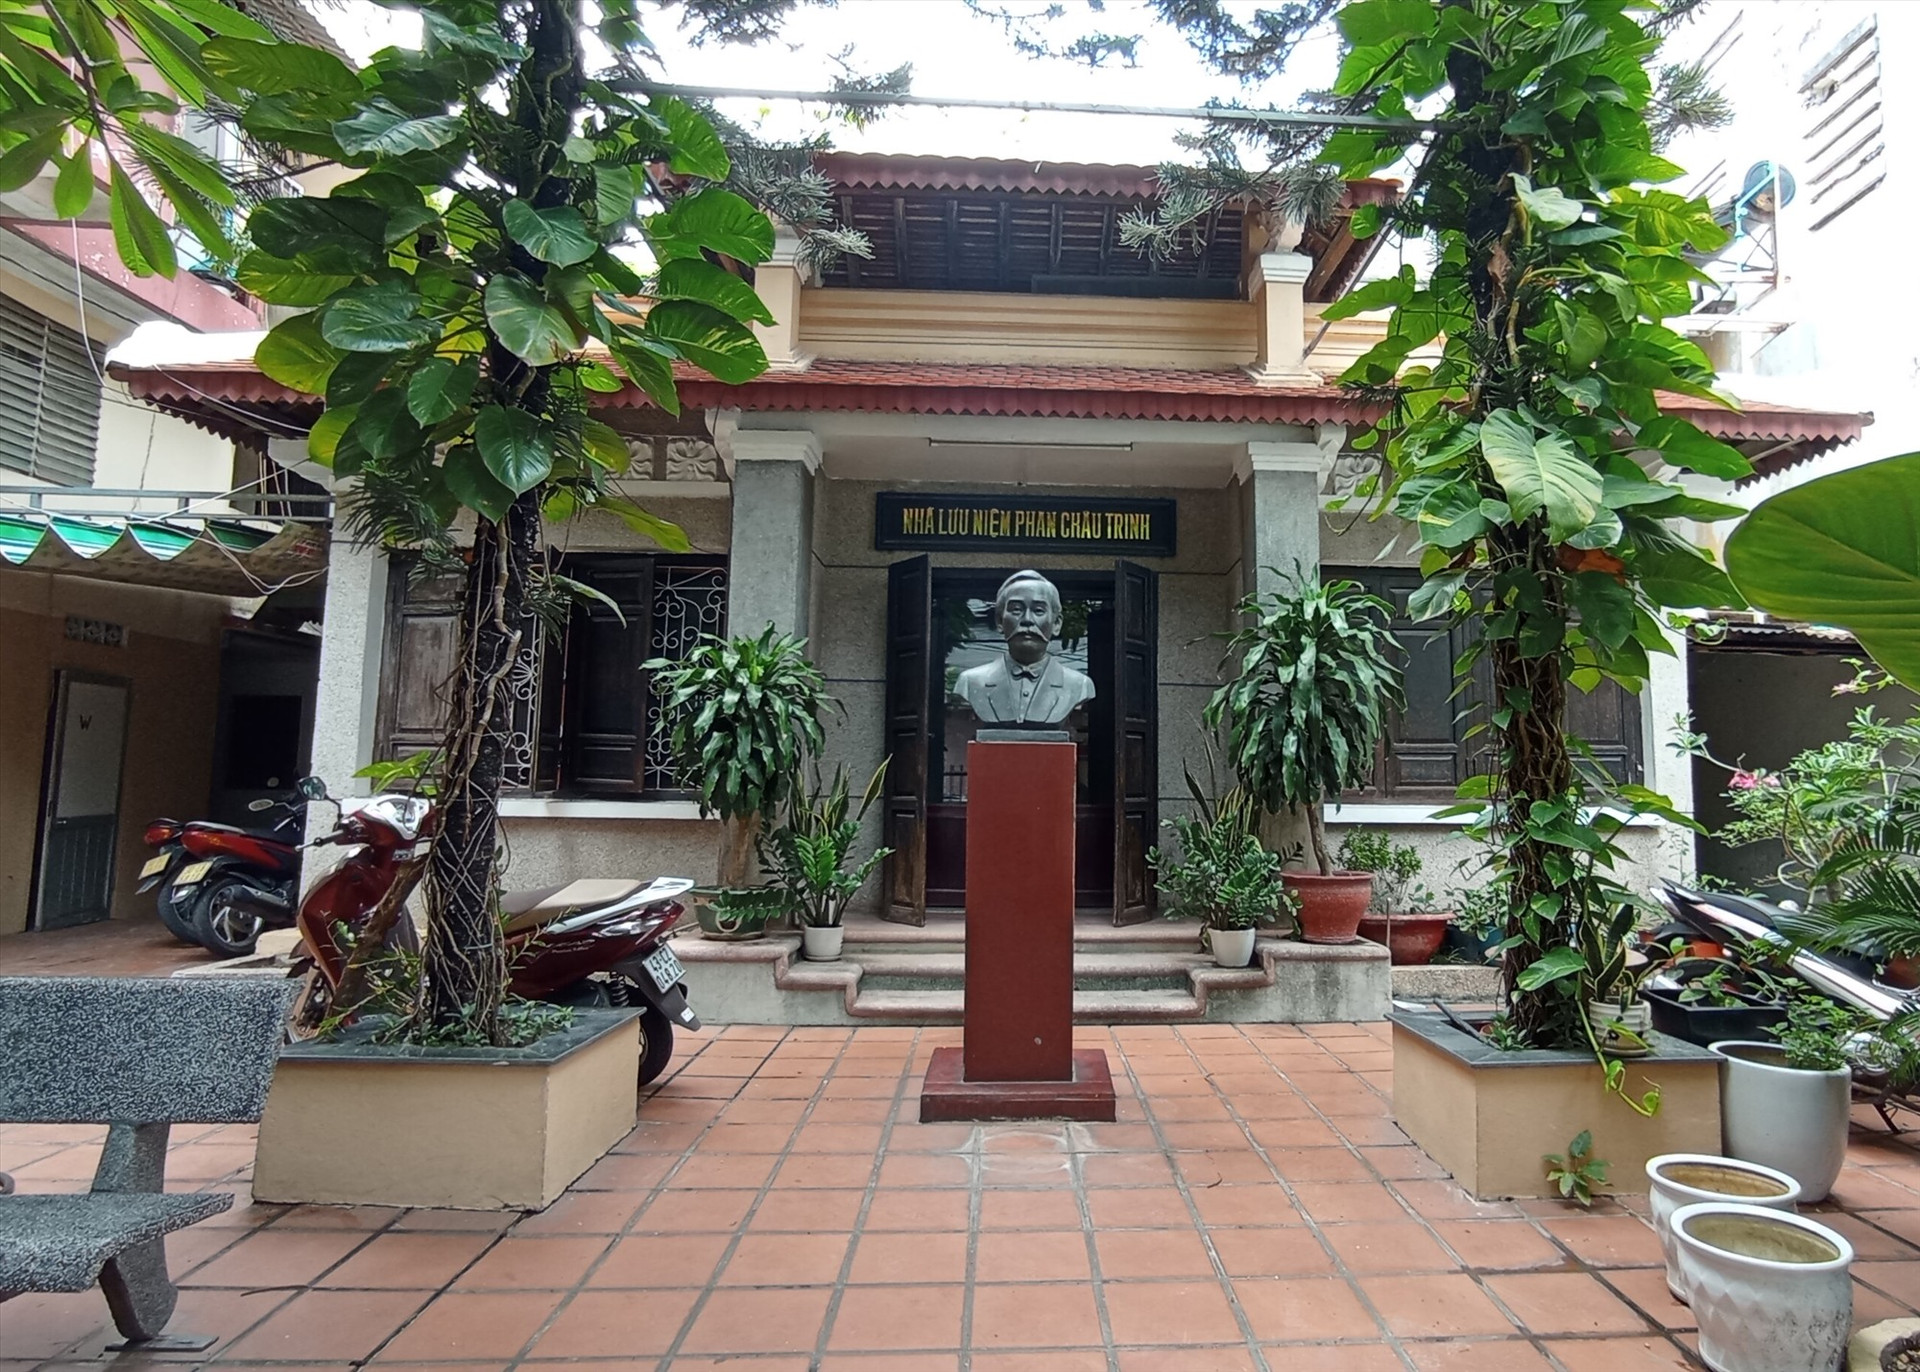 Nhà lưu niệm Phan Châu Trinh tại TP.Đà Nẵng. Ảnh: X.S